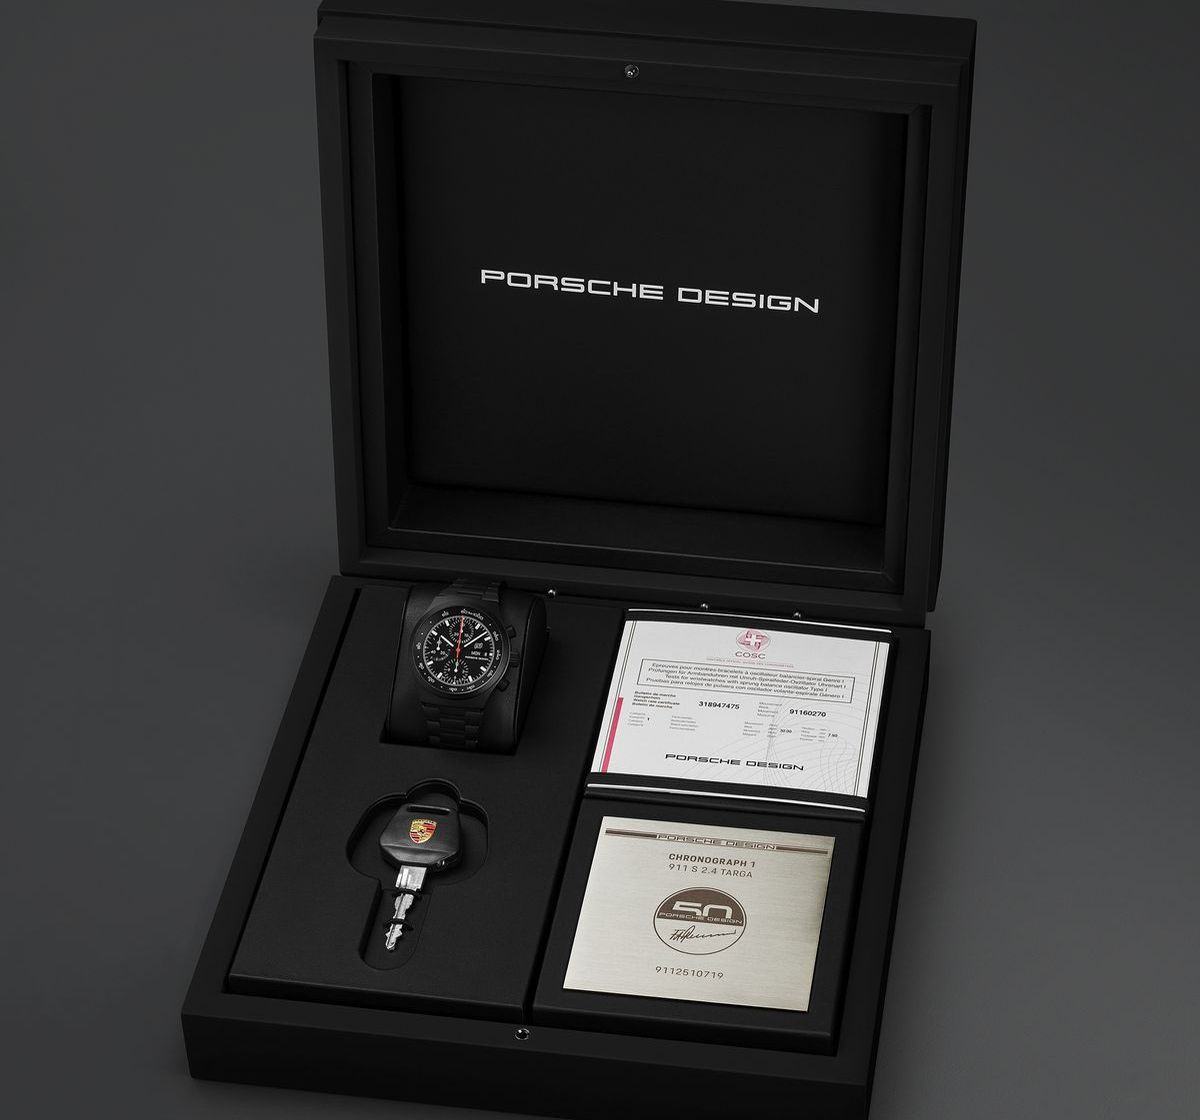 Foto: Begehrte Porsche-Pieces in der Luxus-Auktion bei Sotheby‘s.